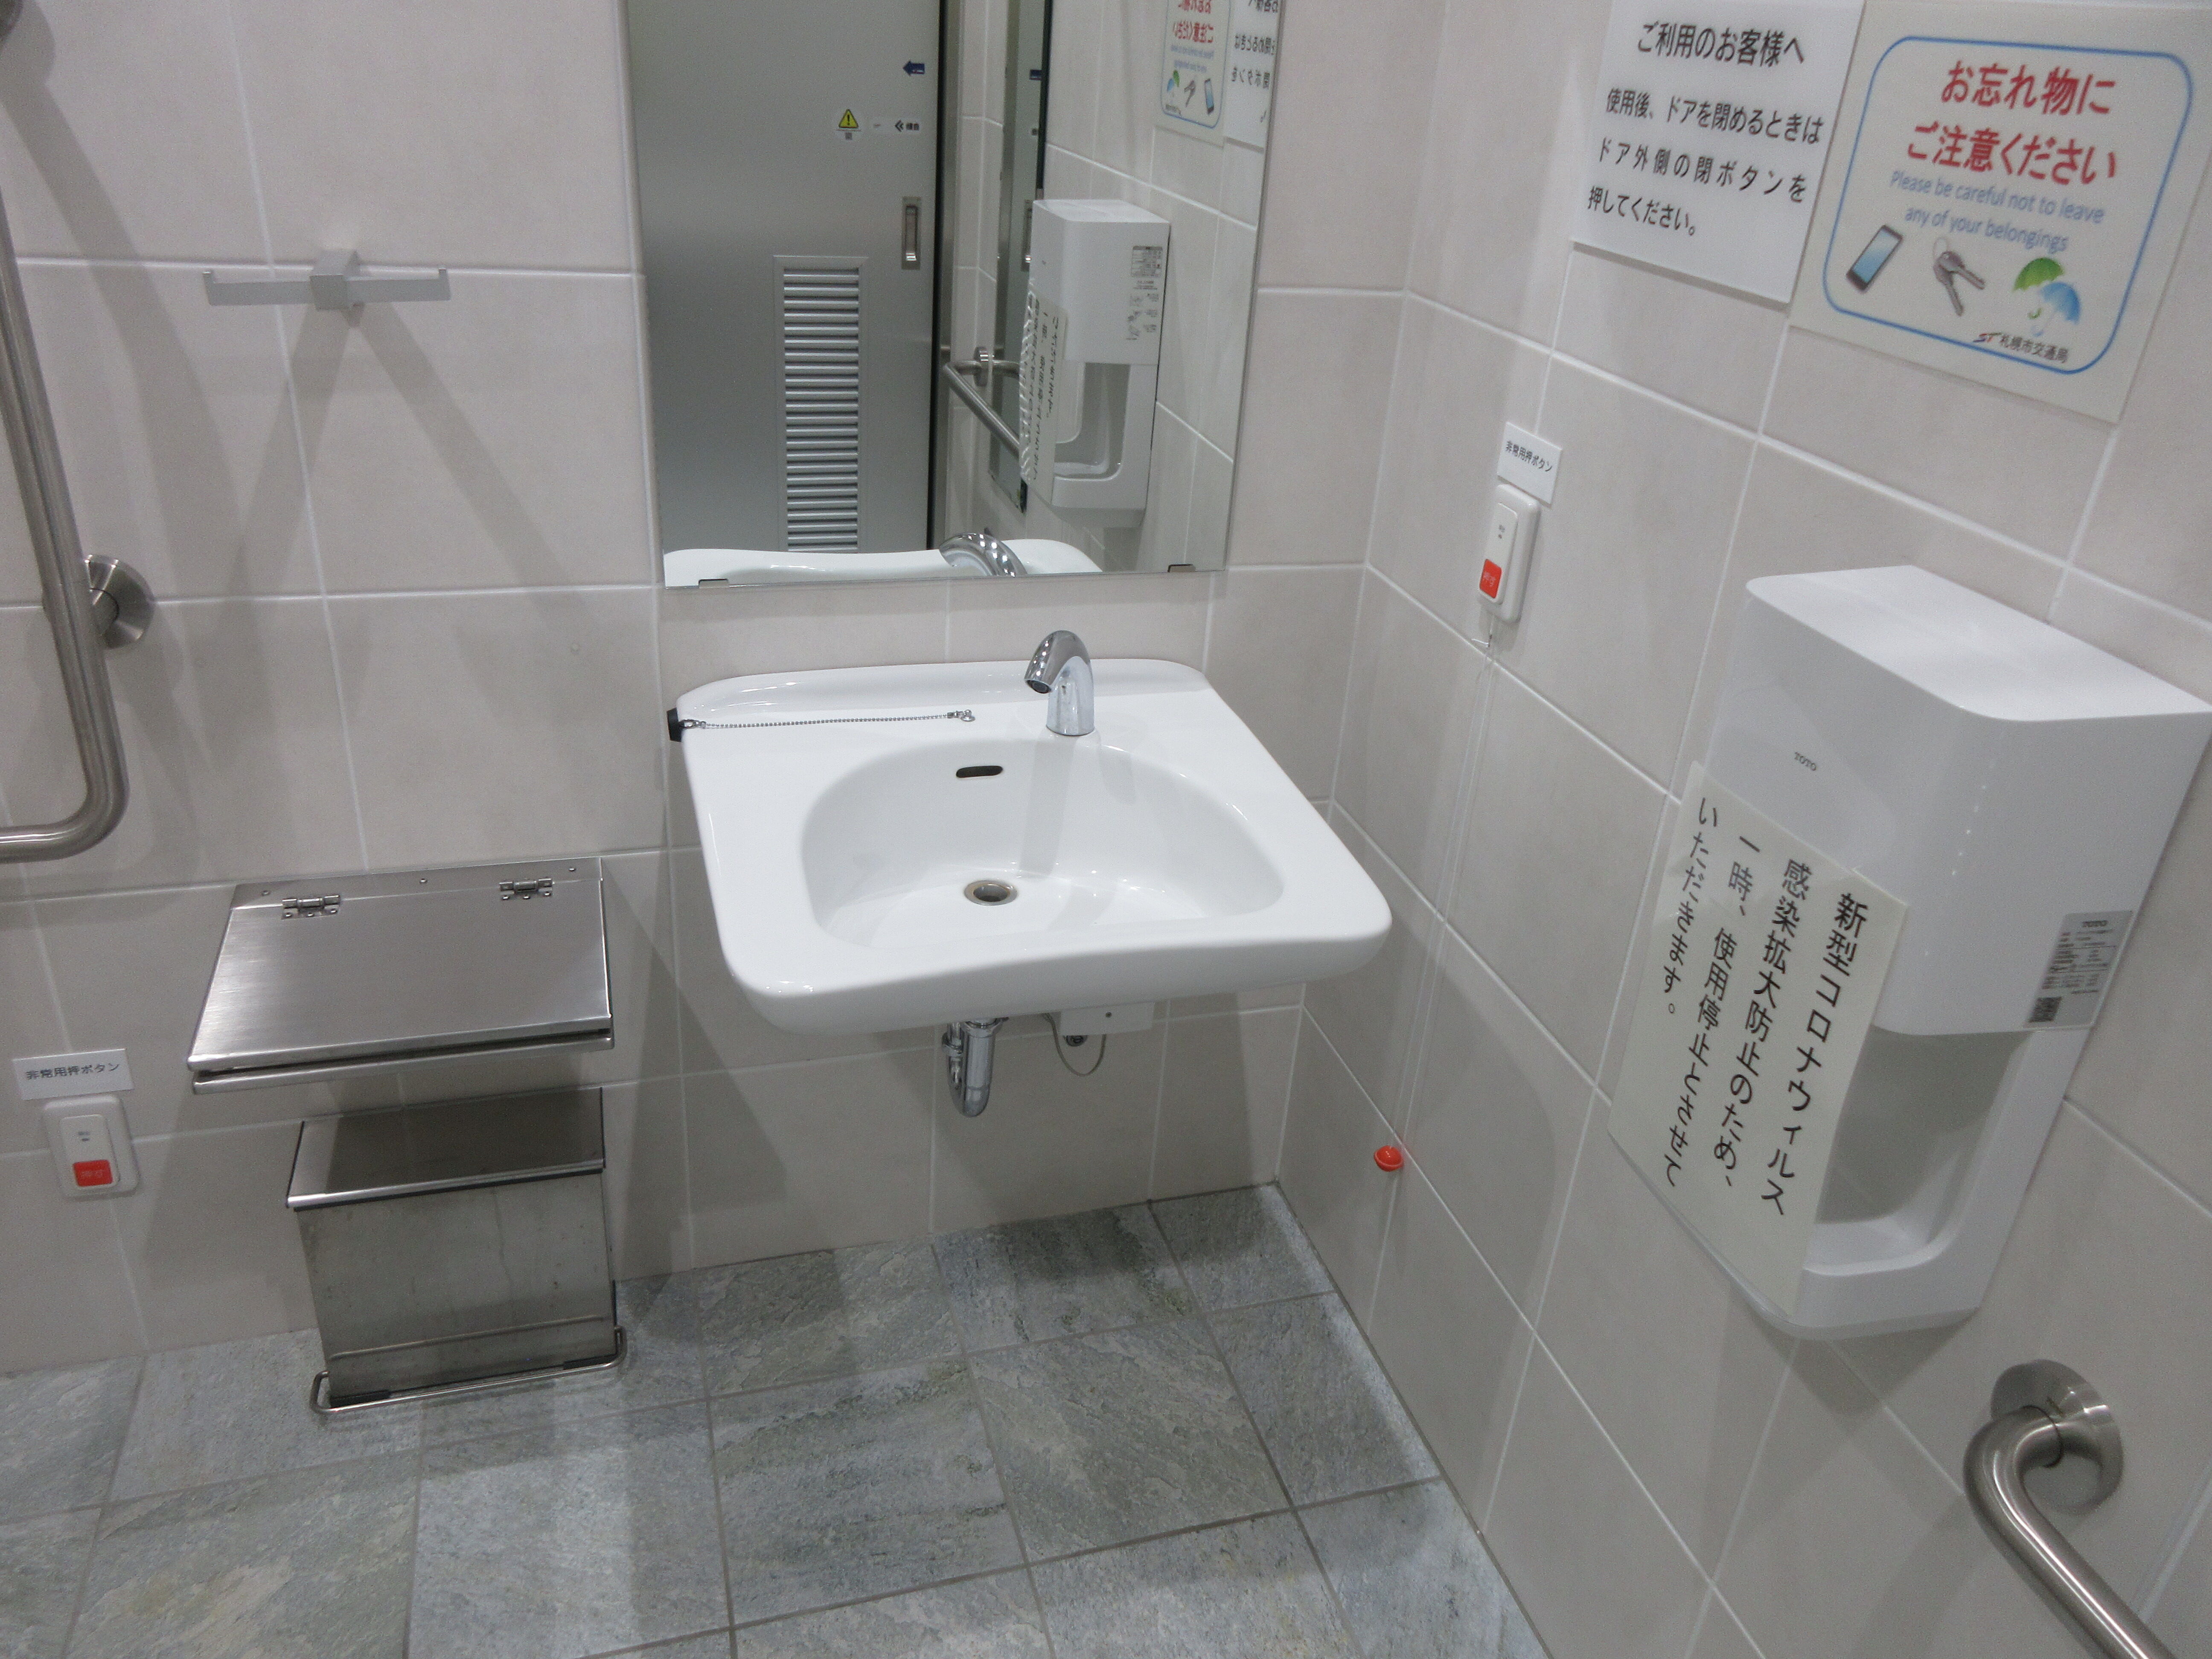 トイレ設備調査日記atosatu 札幌市営地下鉄東豊線さっぽろ駅トイレ再改修後。